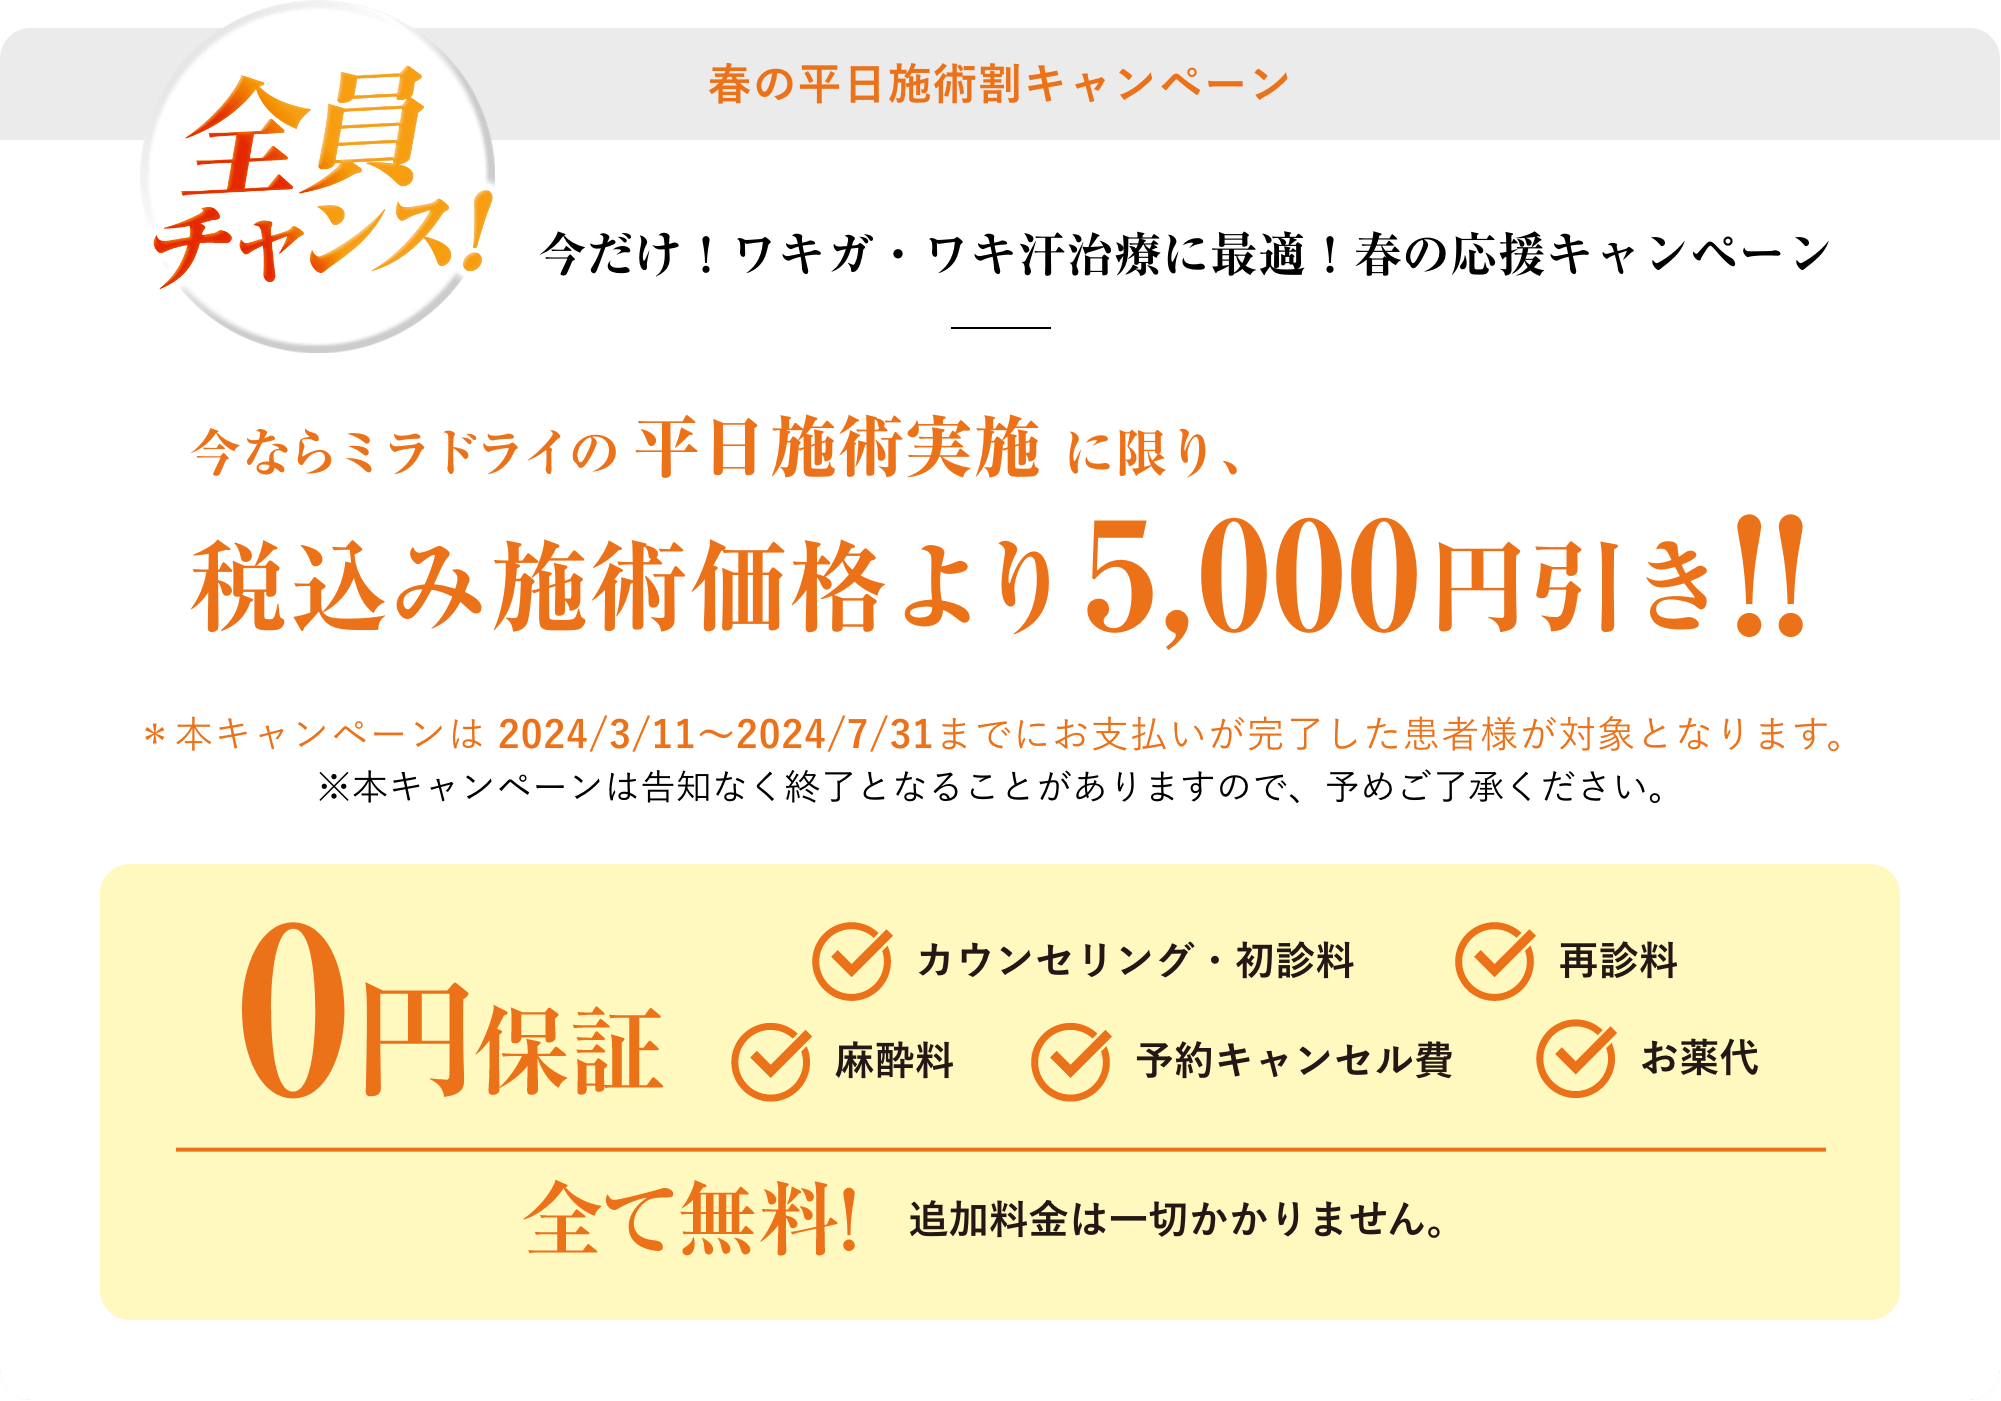 新春の平日施術割キャンペーン税込み施術価格より5,000円引き!